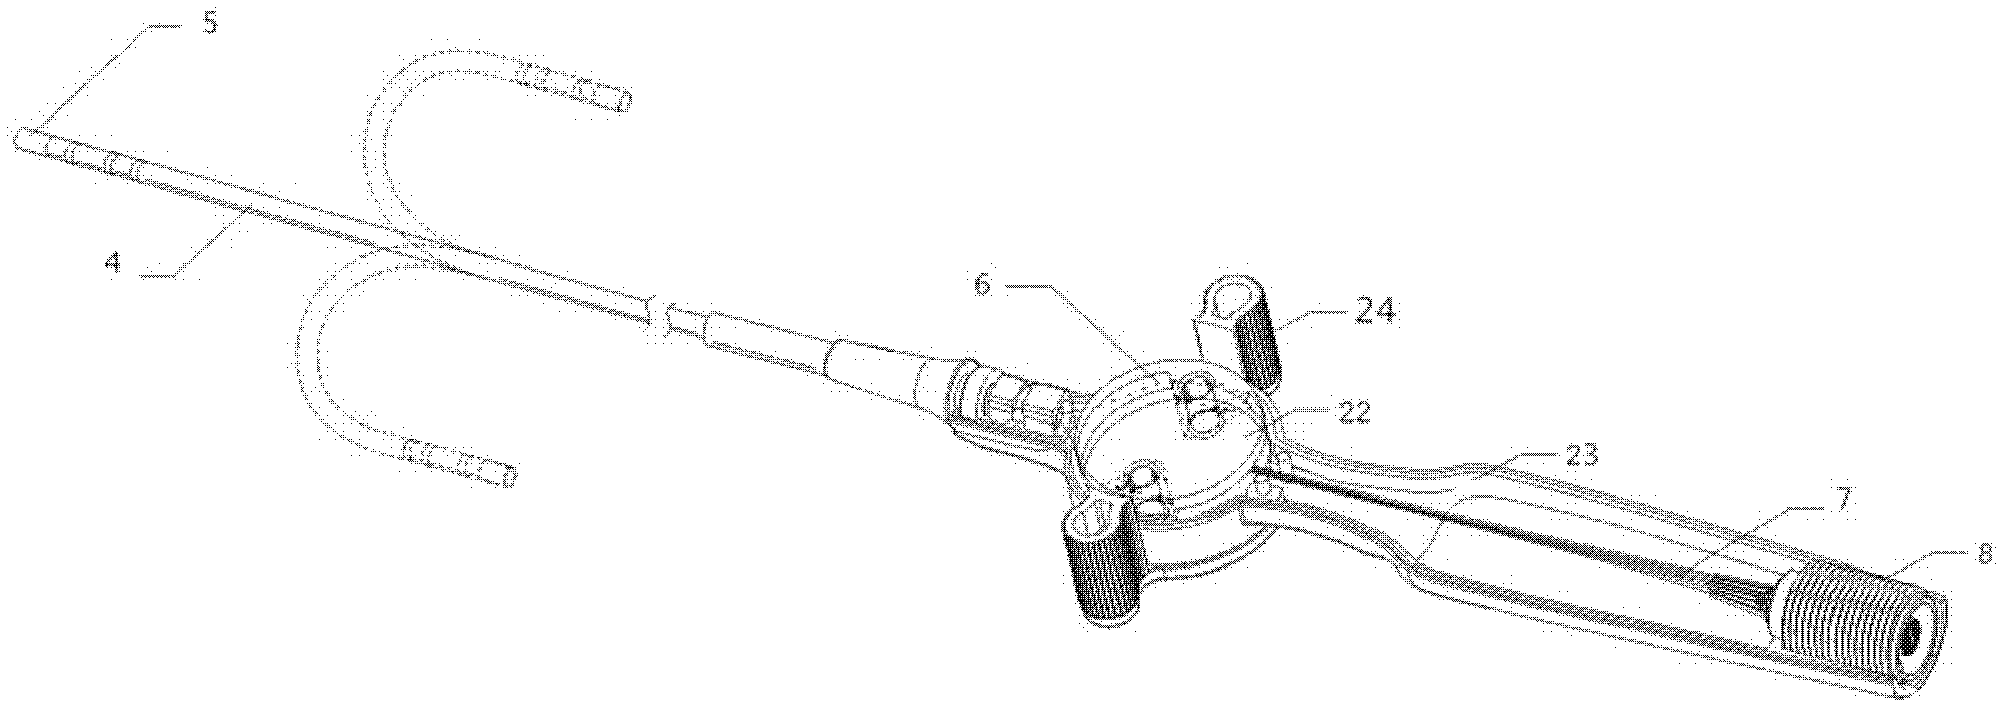 Dual-bent handle